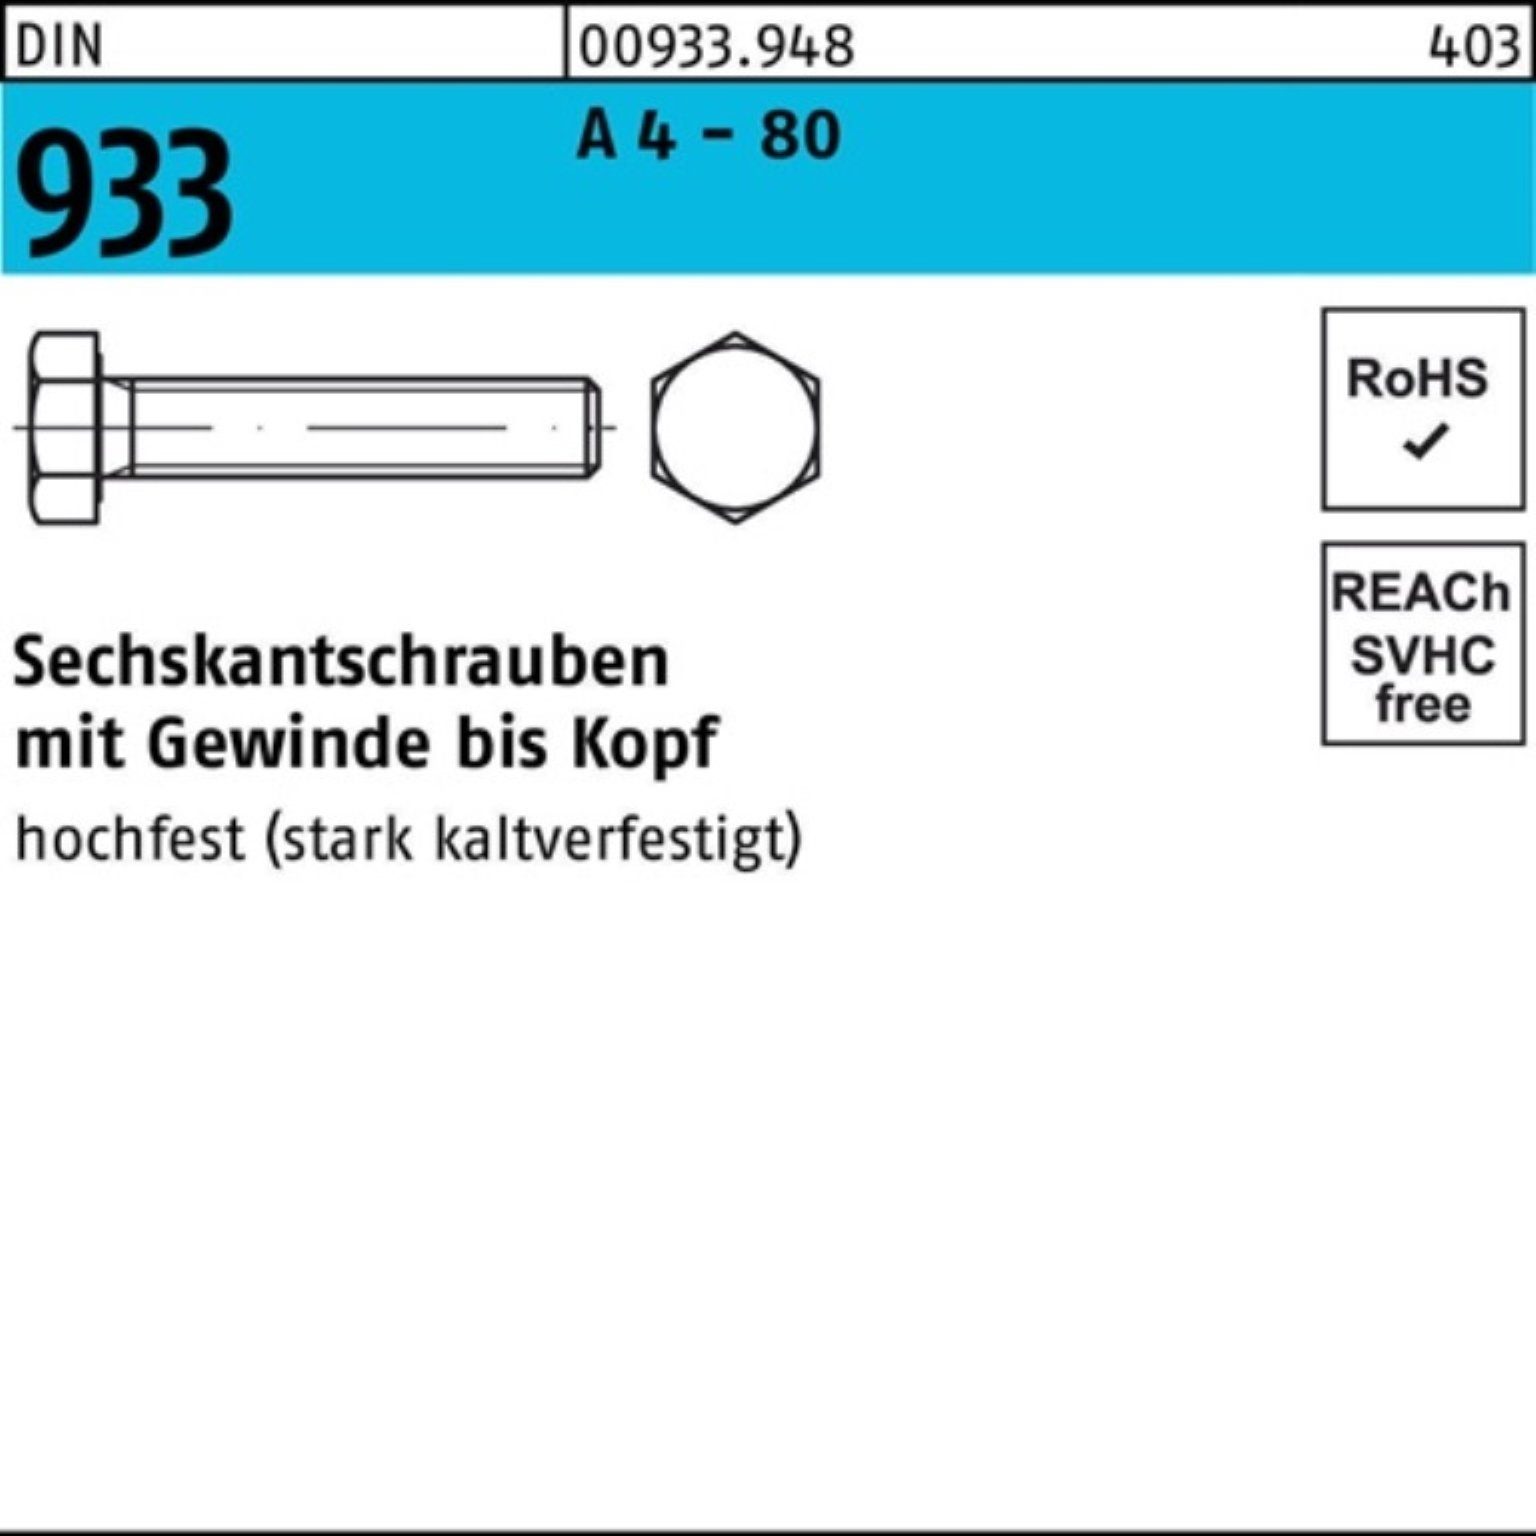 Reyher Sechskantschraube 100er Pack Sechskantschraube DIN 933 VG M10x 130 A 4 - 80 1 Stück DIN